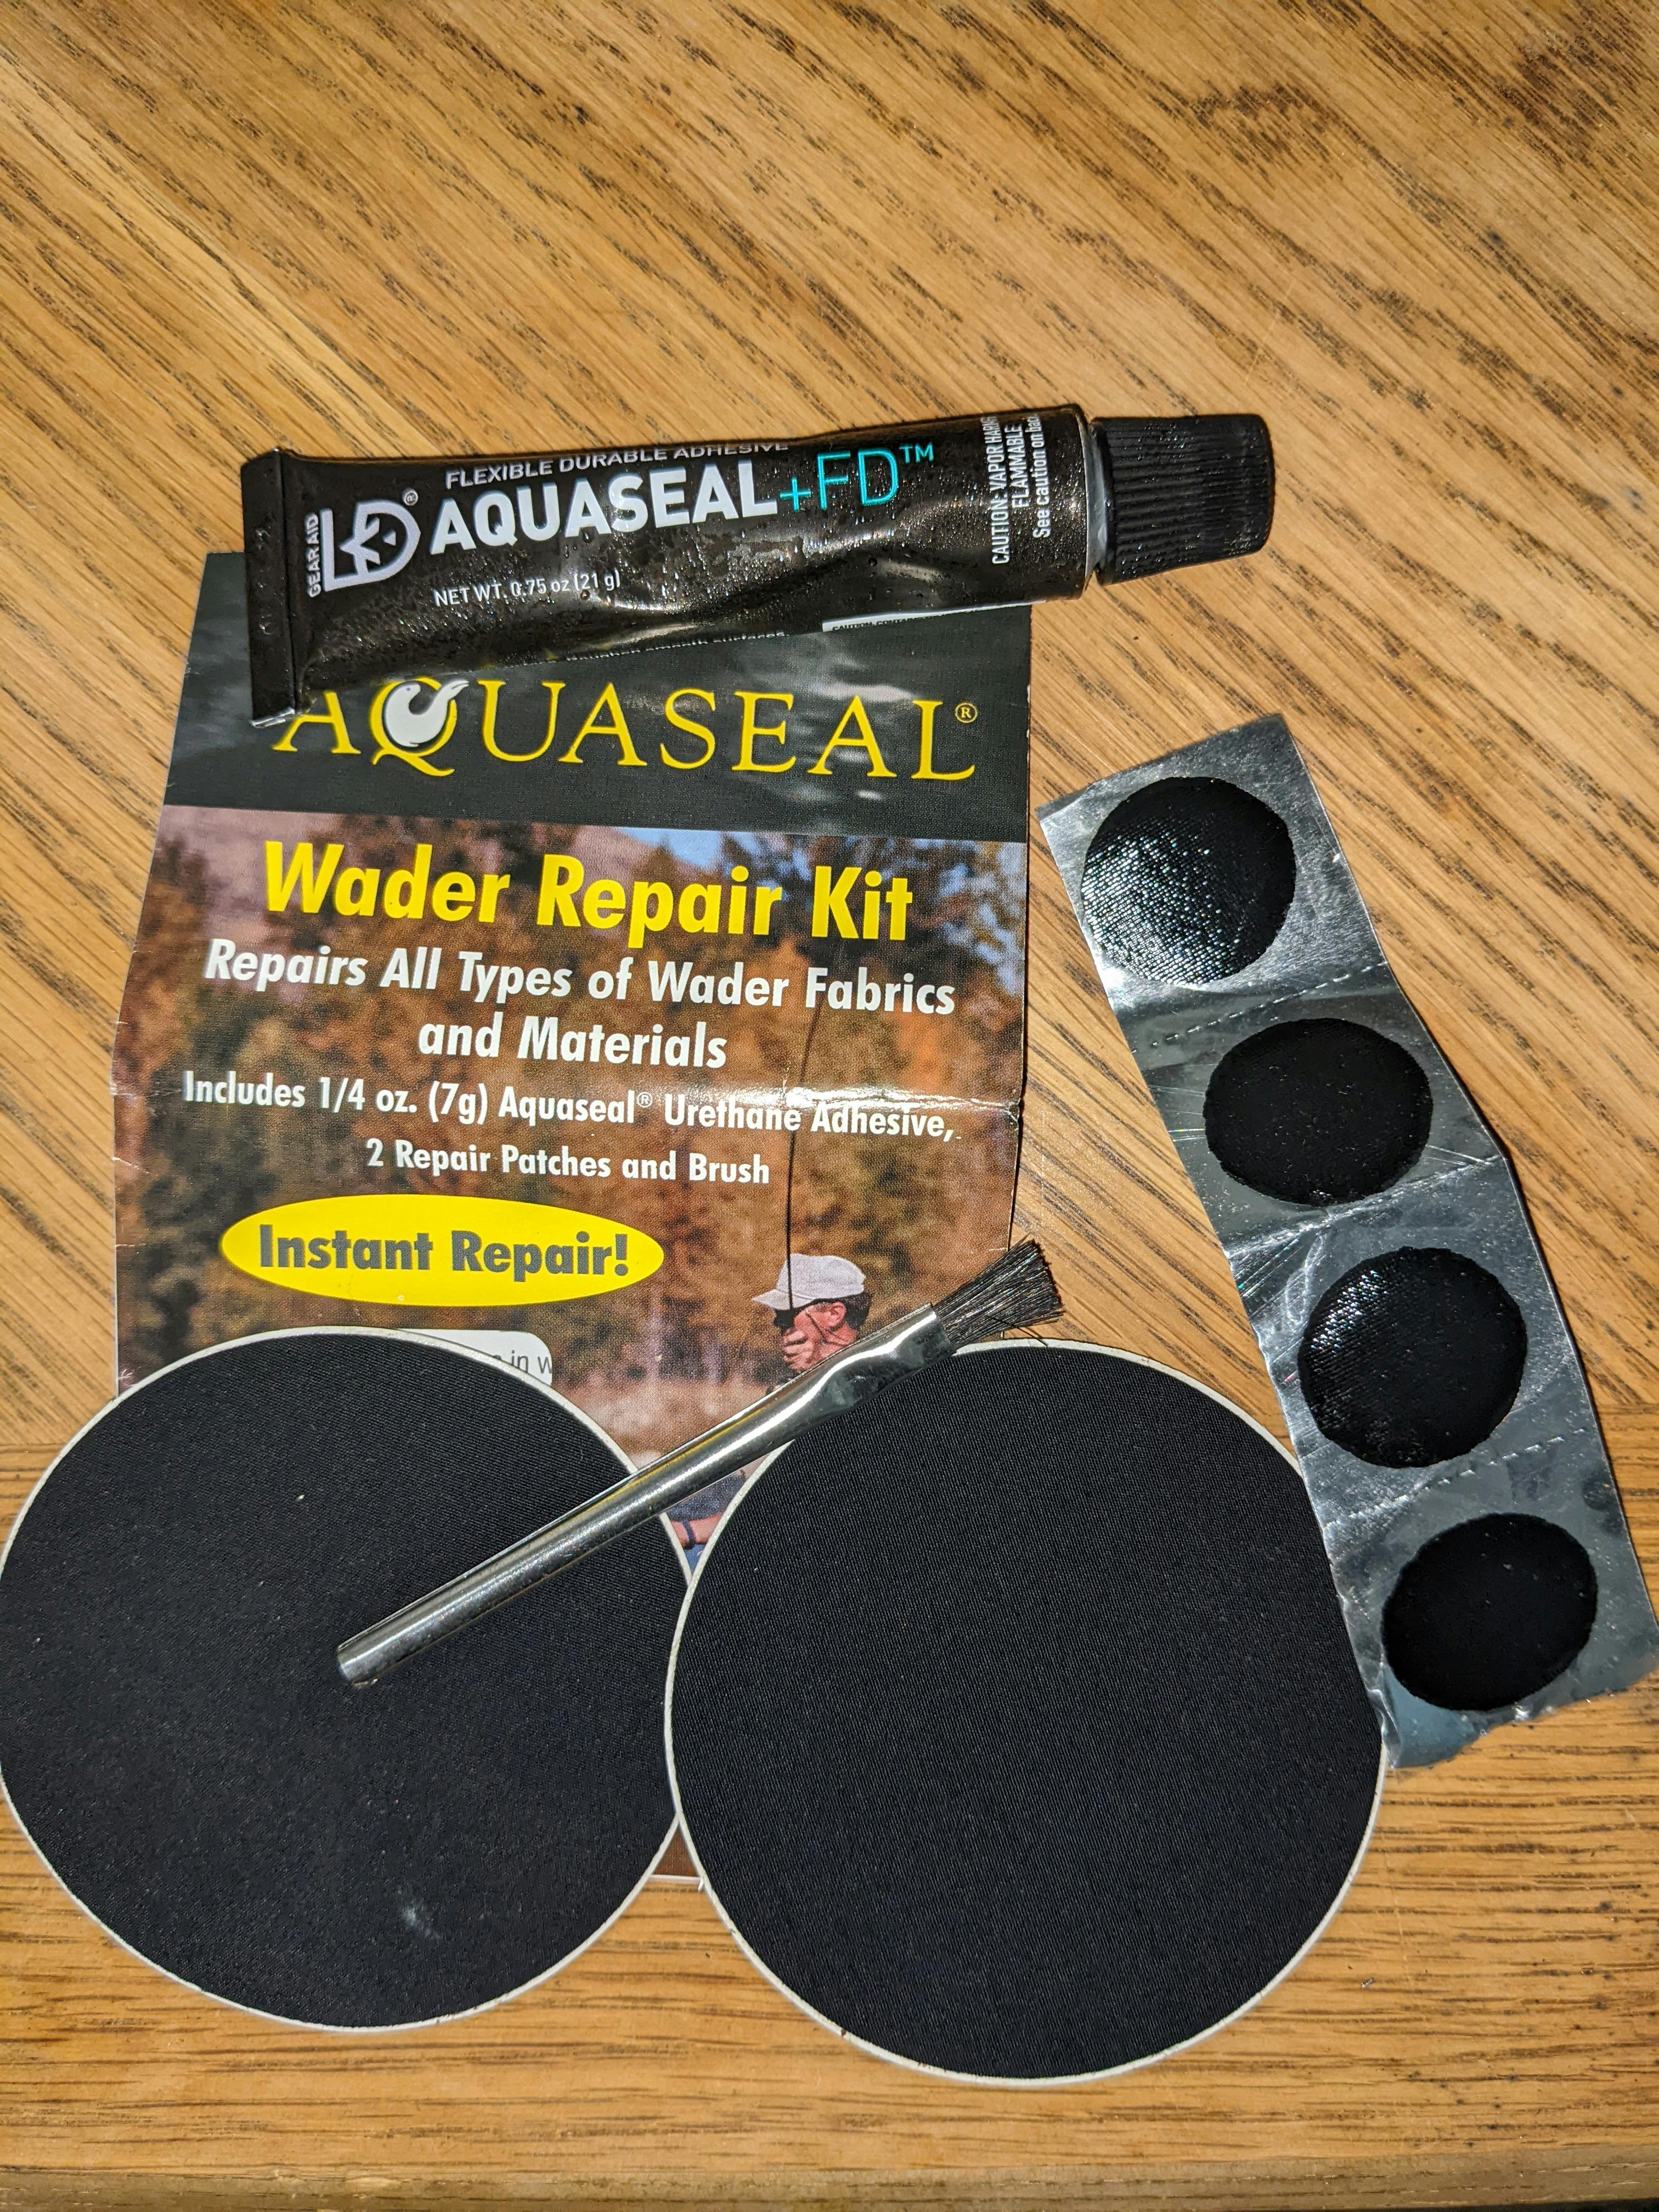 A compact wader field repair kit.